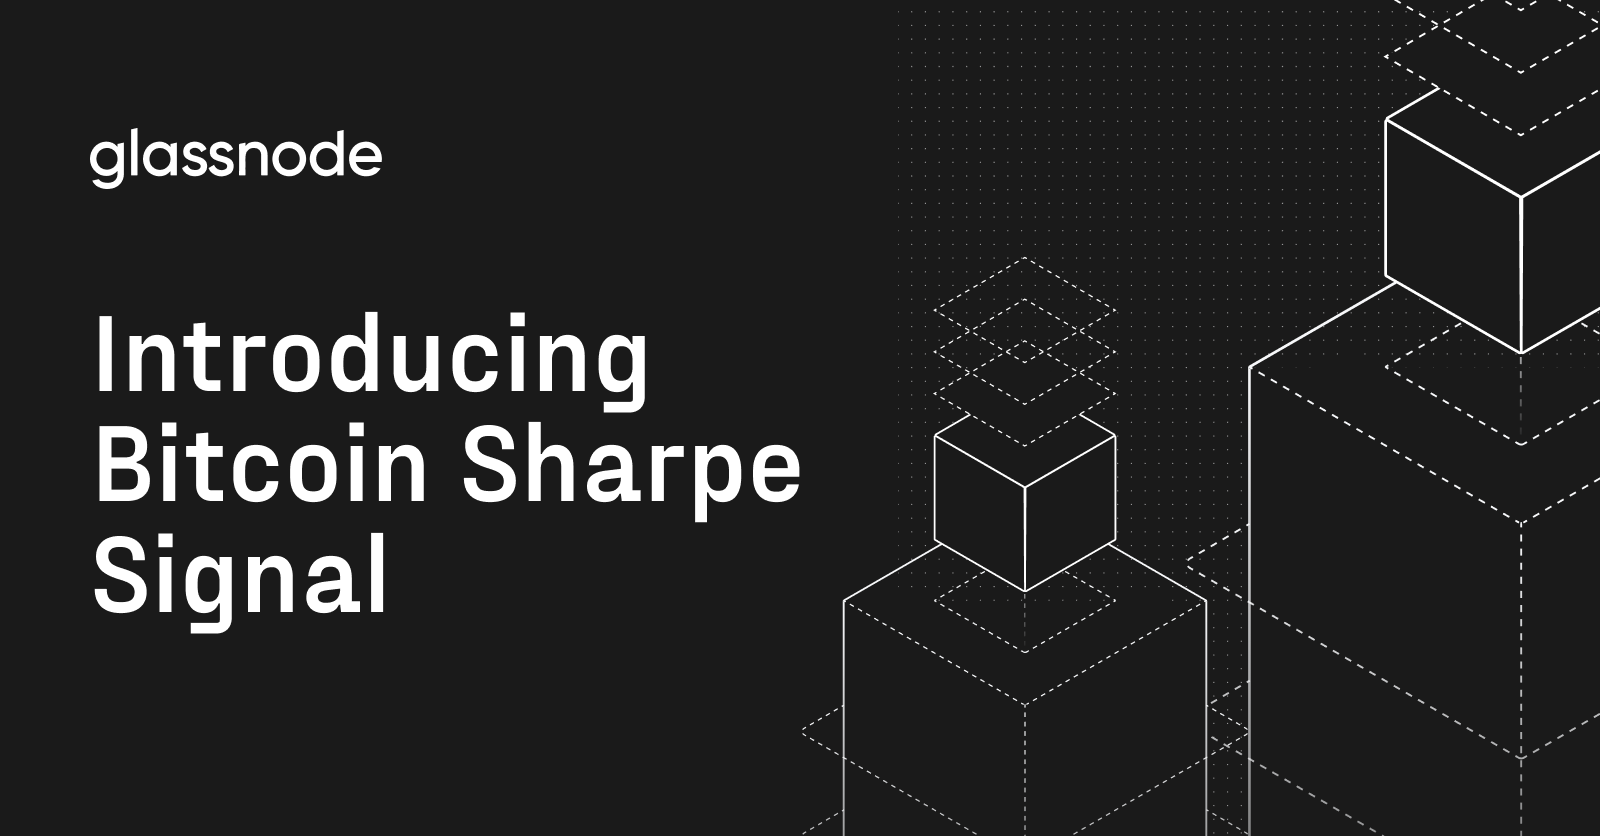 Presentamos Bitcoin Sharpe Signal: simplificando las operaciones de Bitcoin con datos de Glassnode